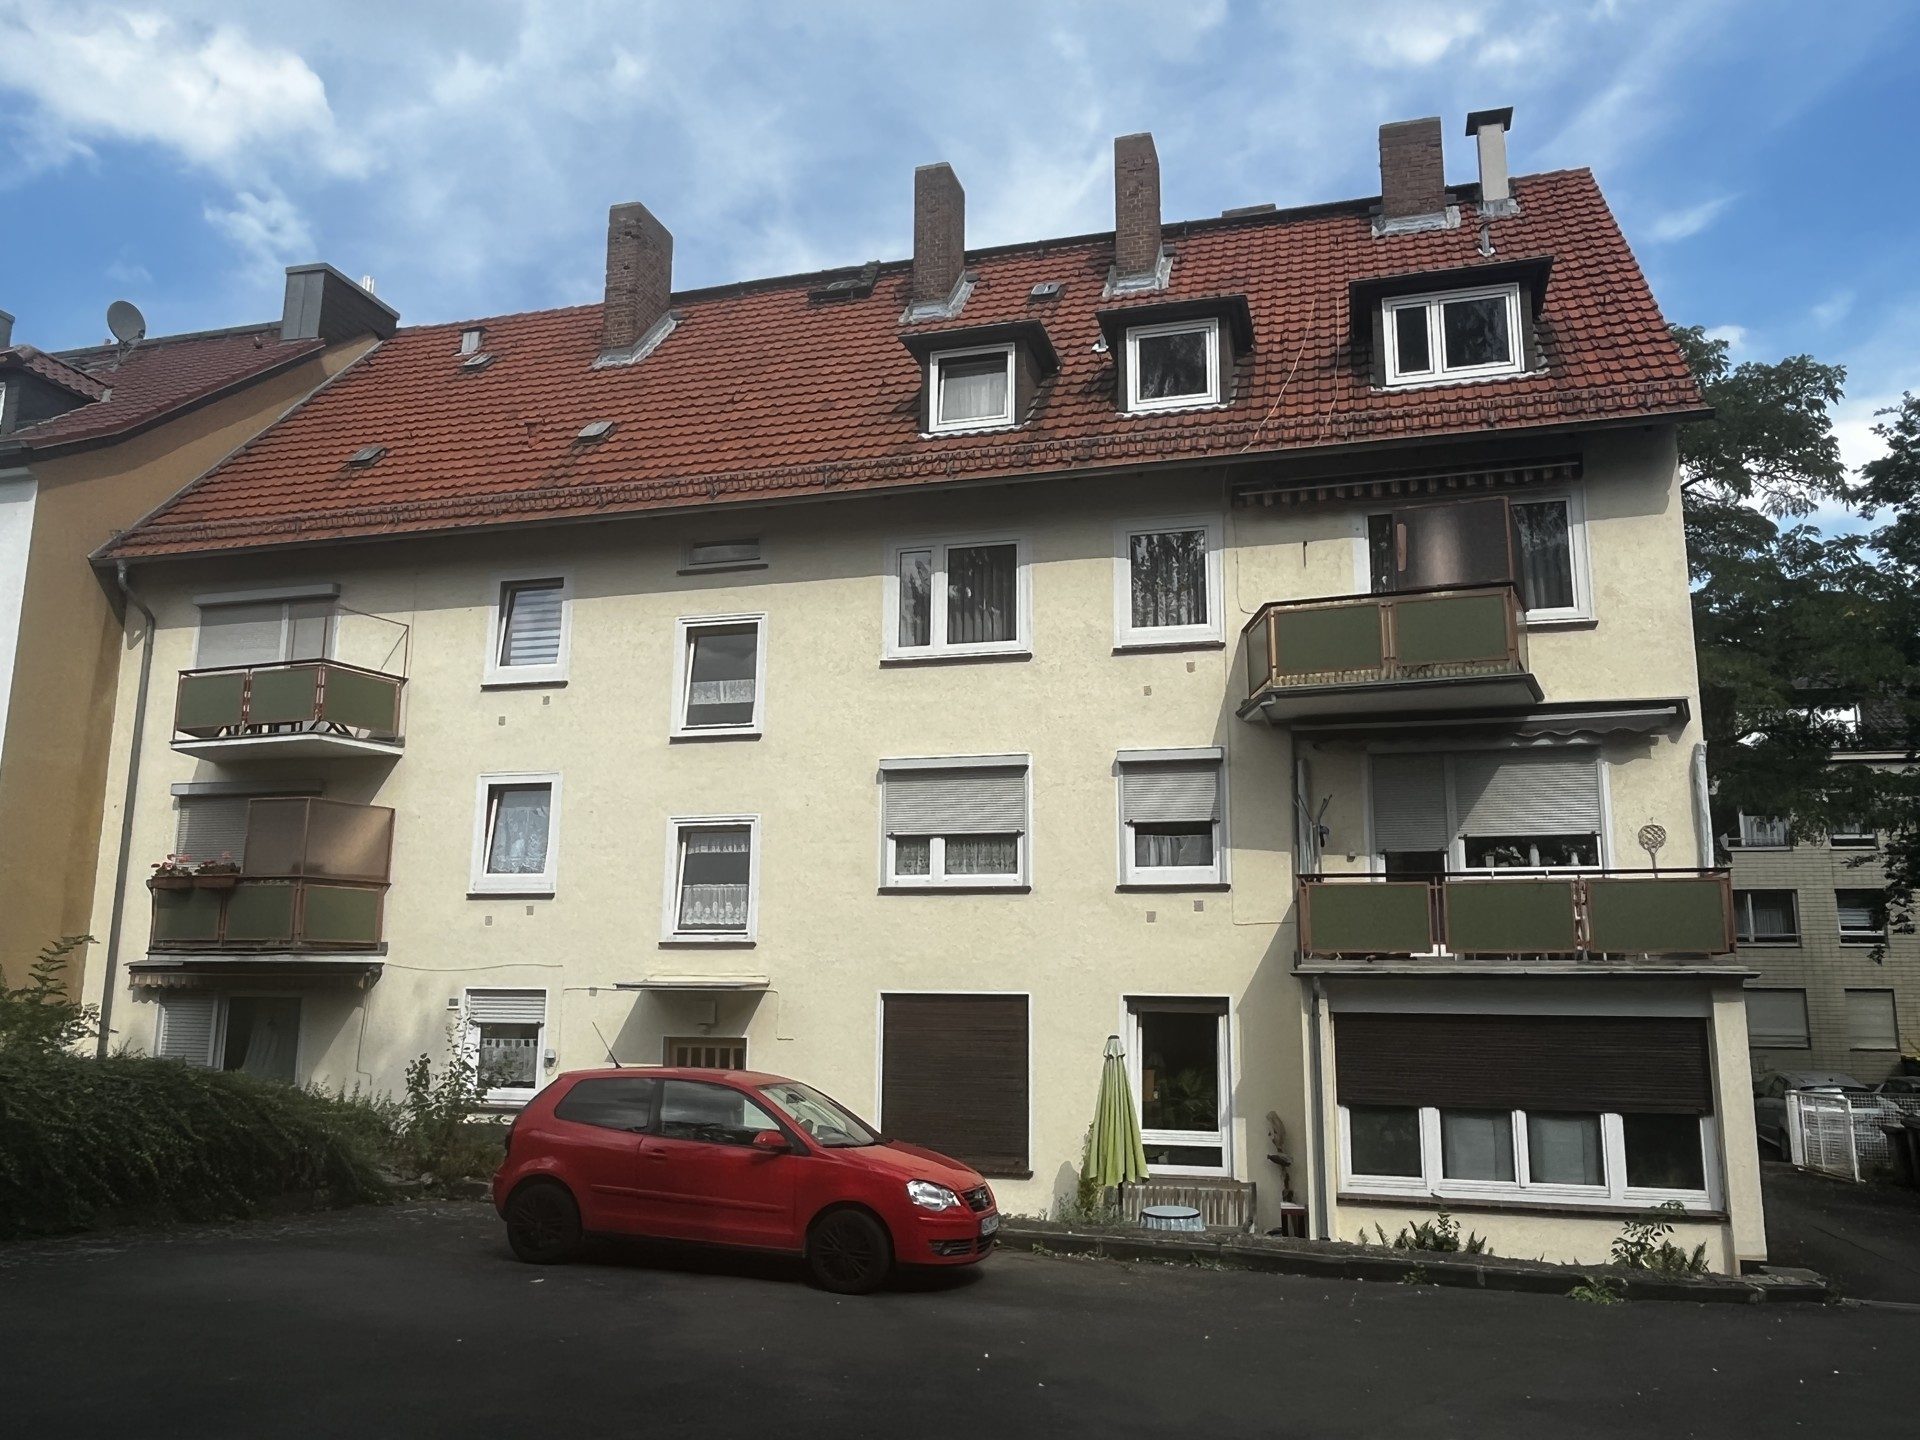 Immobilienangebot - Kassel - Alle - Eigentumswohnung in ruhiger Lage von Wehlheiden zu verkaufen! KEINE KÄUFERPROVISION